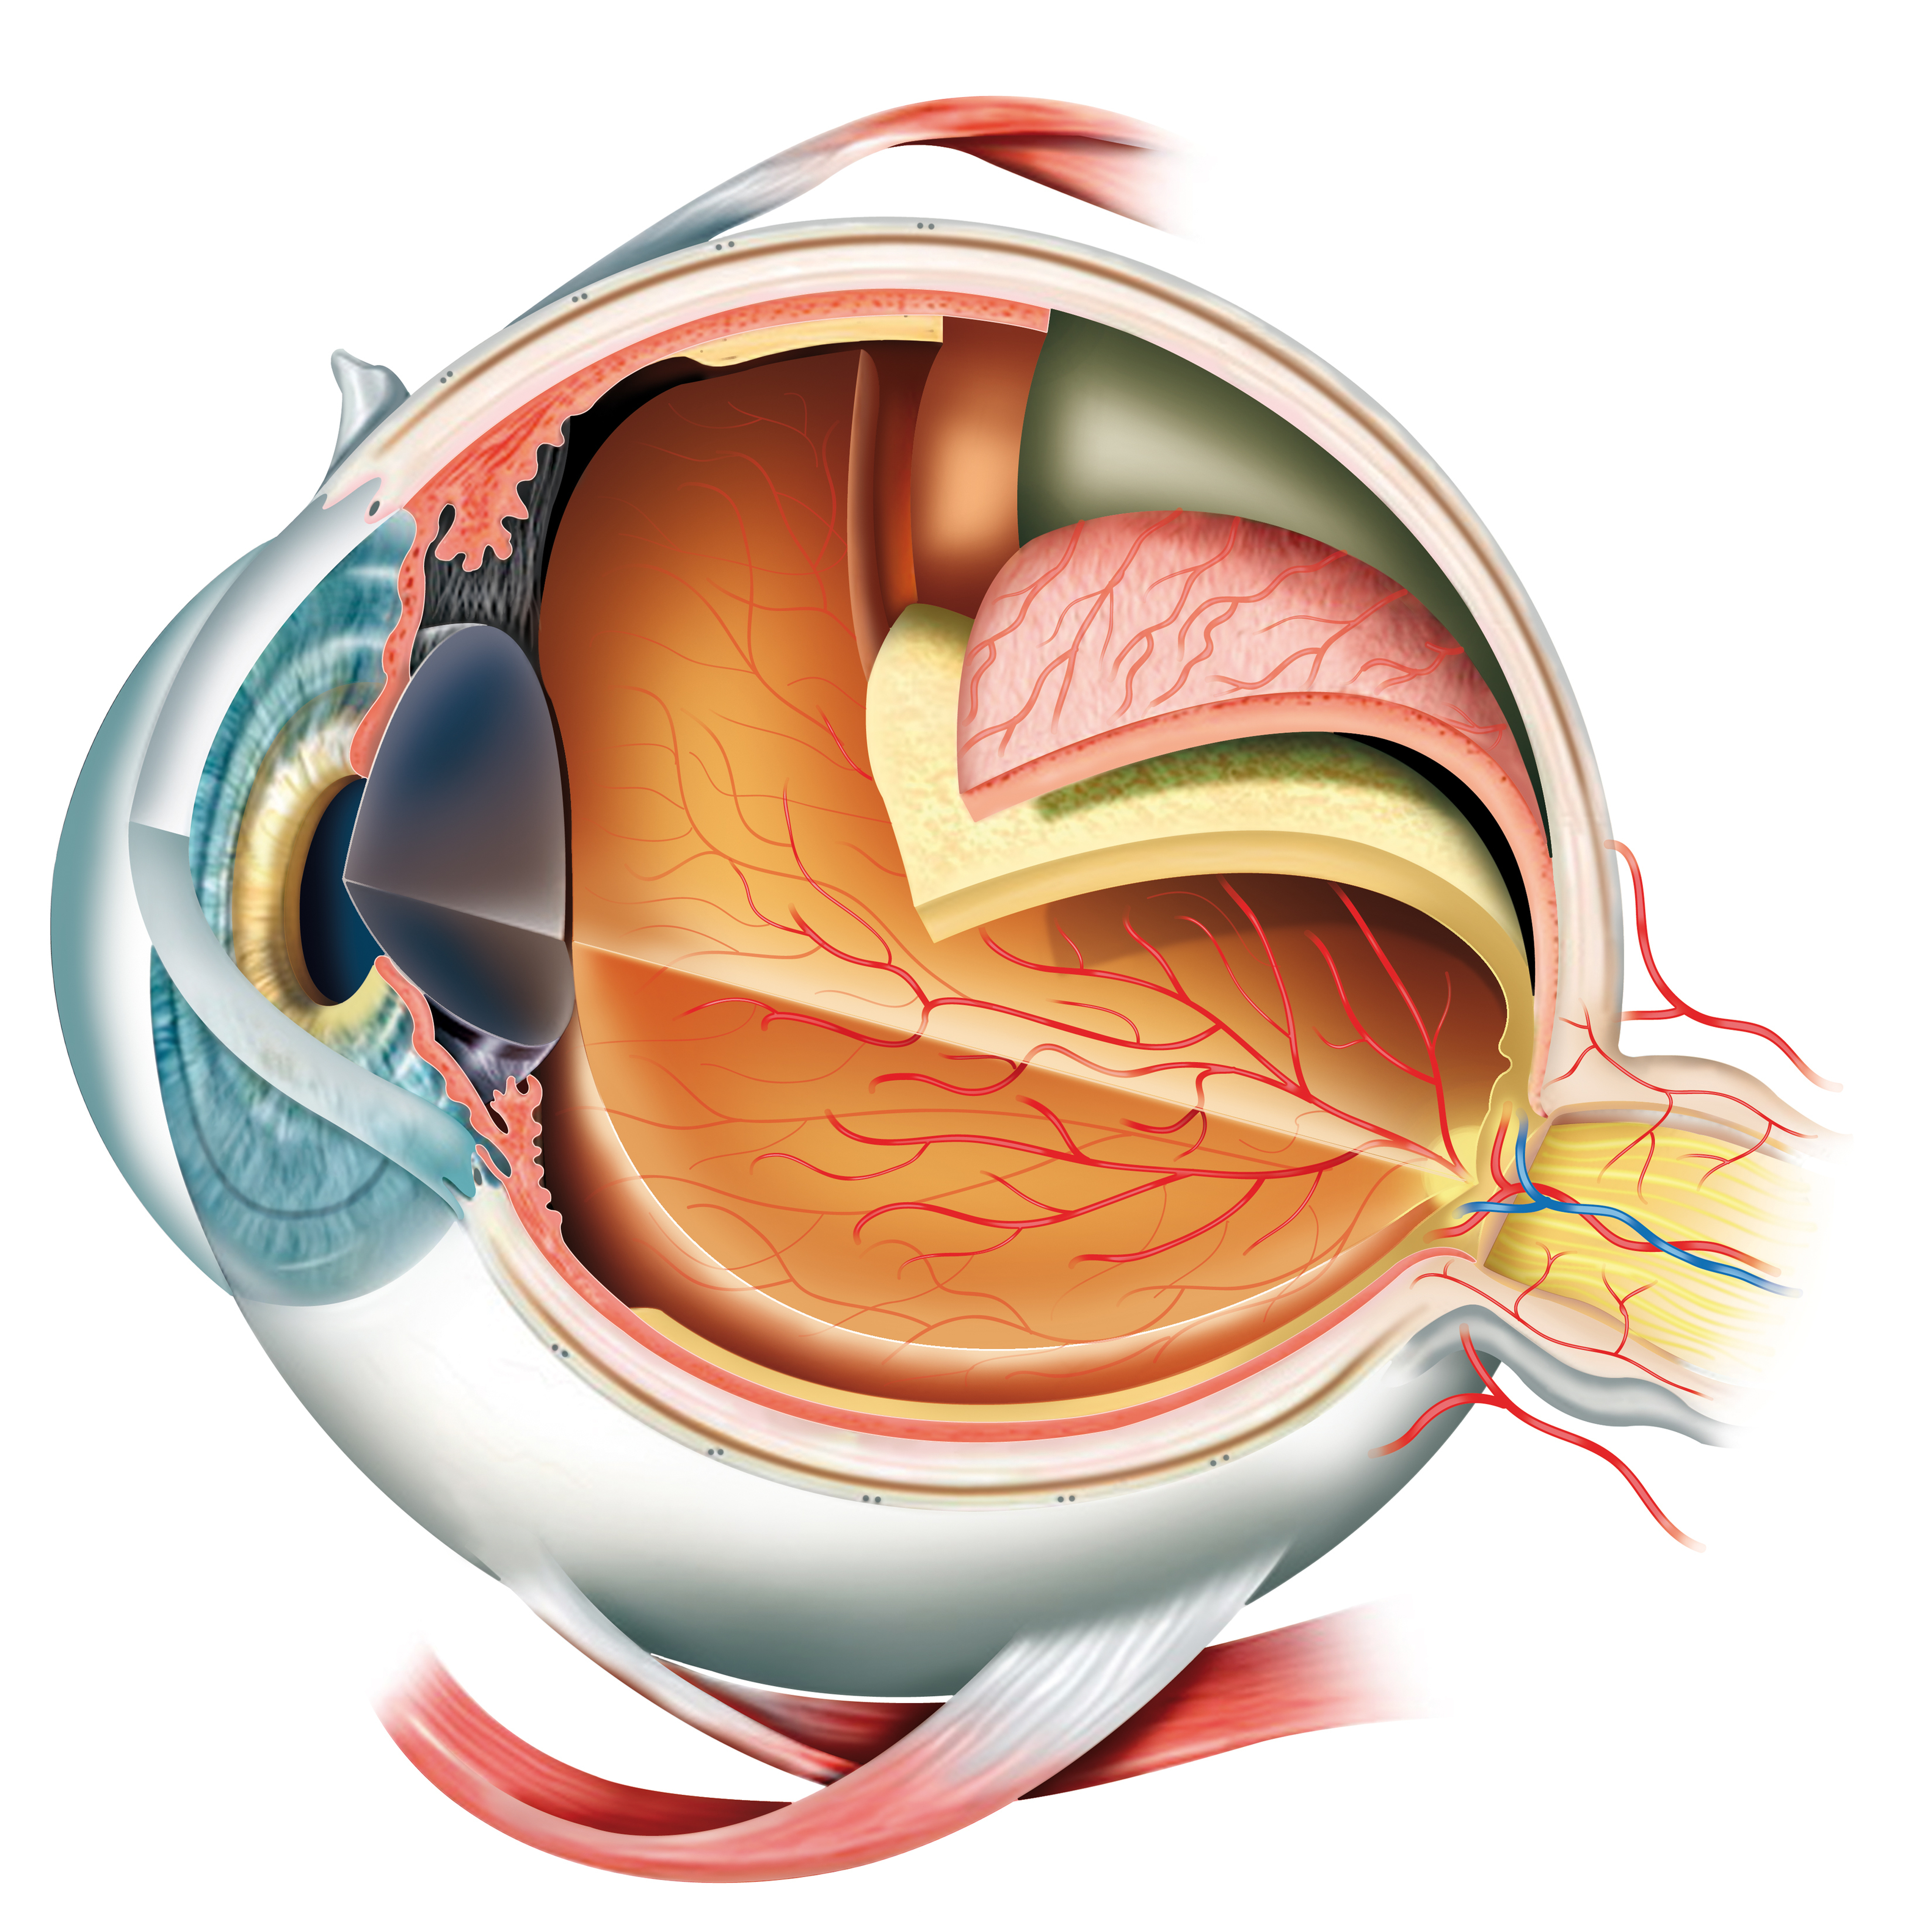 Строение глаза глазное яблоко. Склера сосудистая оболочка сетчатка. Центральная Вена сетчатки анатомия. Центральная артерия сетчатки анатомия. Анатомия глаза.